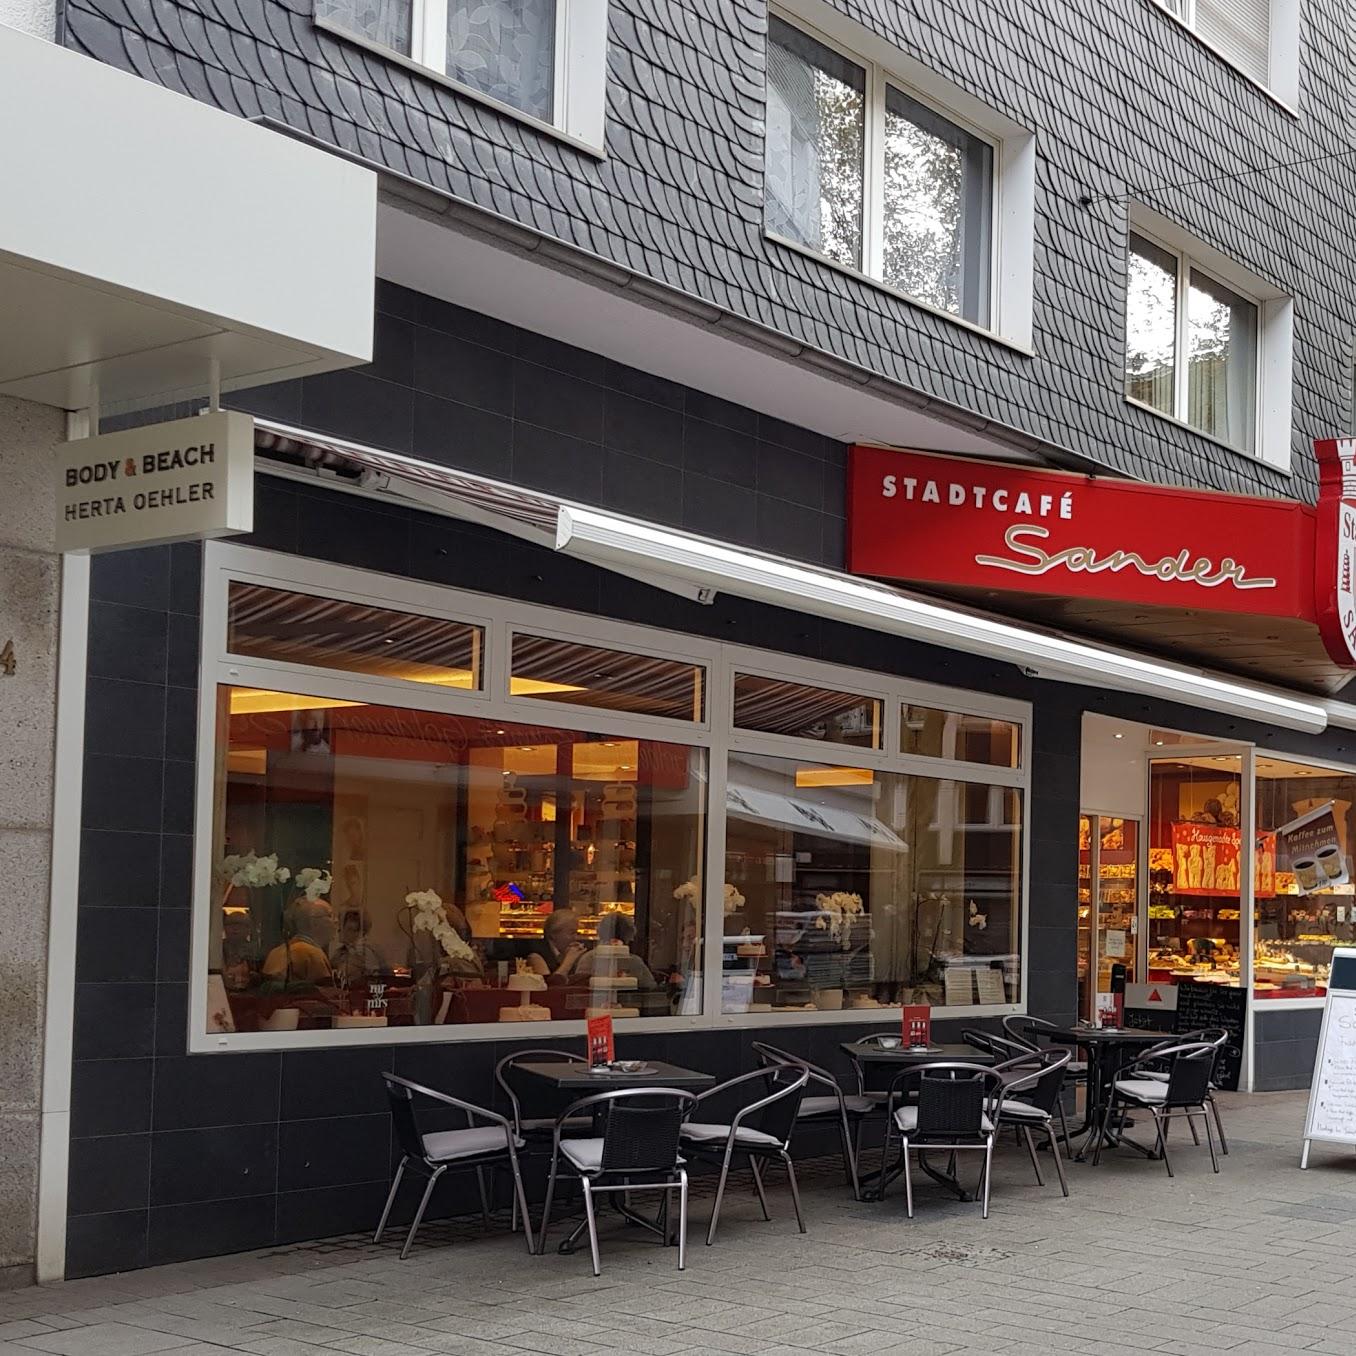 Restaurant "Stadtcafé Sander Konditorei und Café GmbH" in Mülheim an der Ruhr